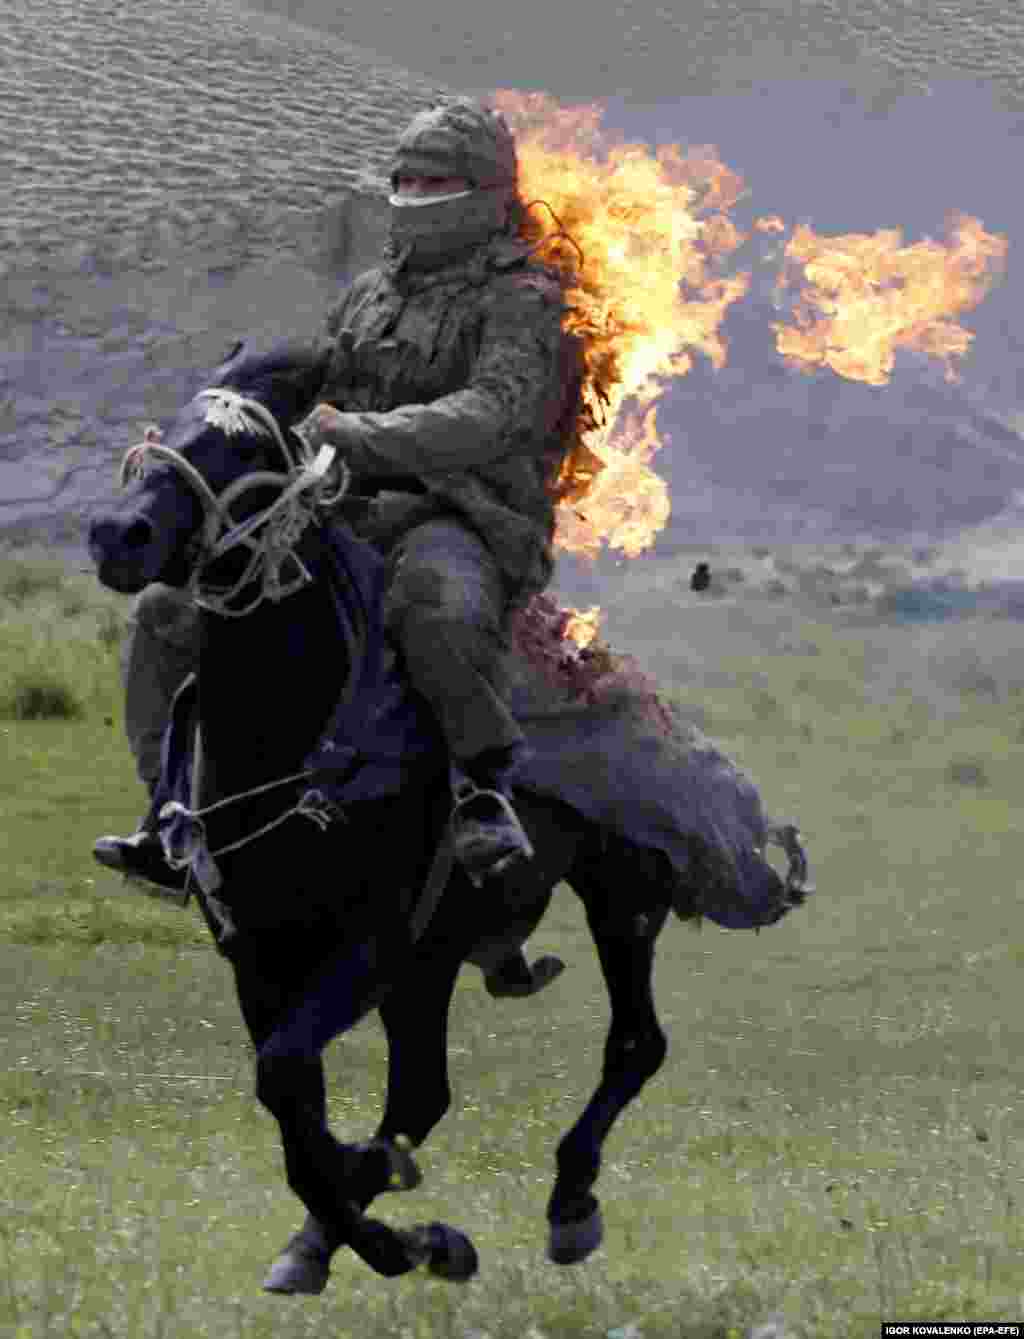 Hrabrost i demonstracija konjanika dok u plamenu trči ravnicom. Konji su neophodni za nomadski način života, jer bi bez njih život na planinama i stepama bio nemoguć.